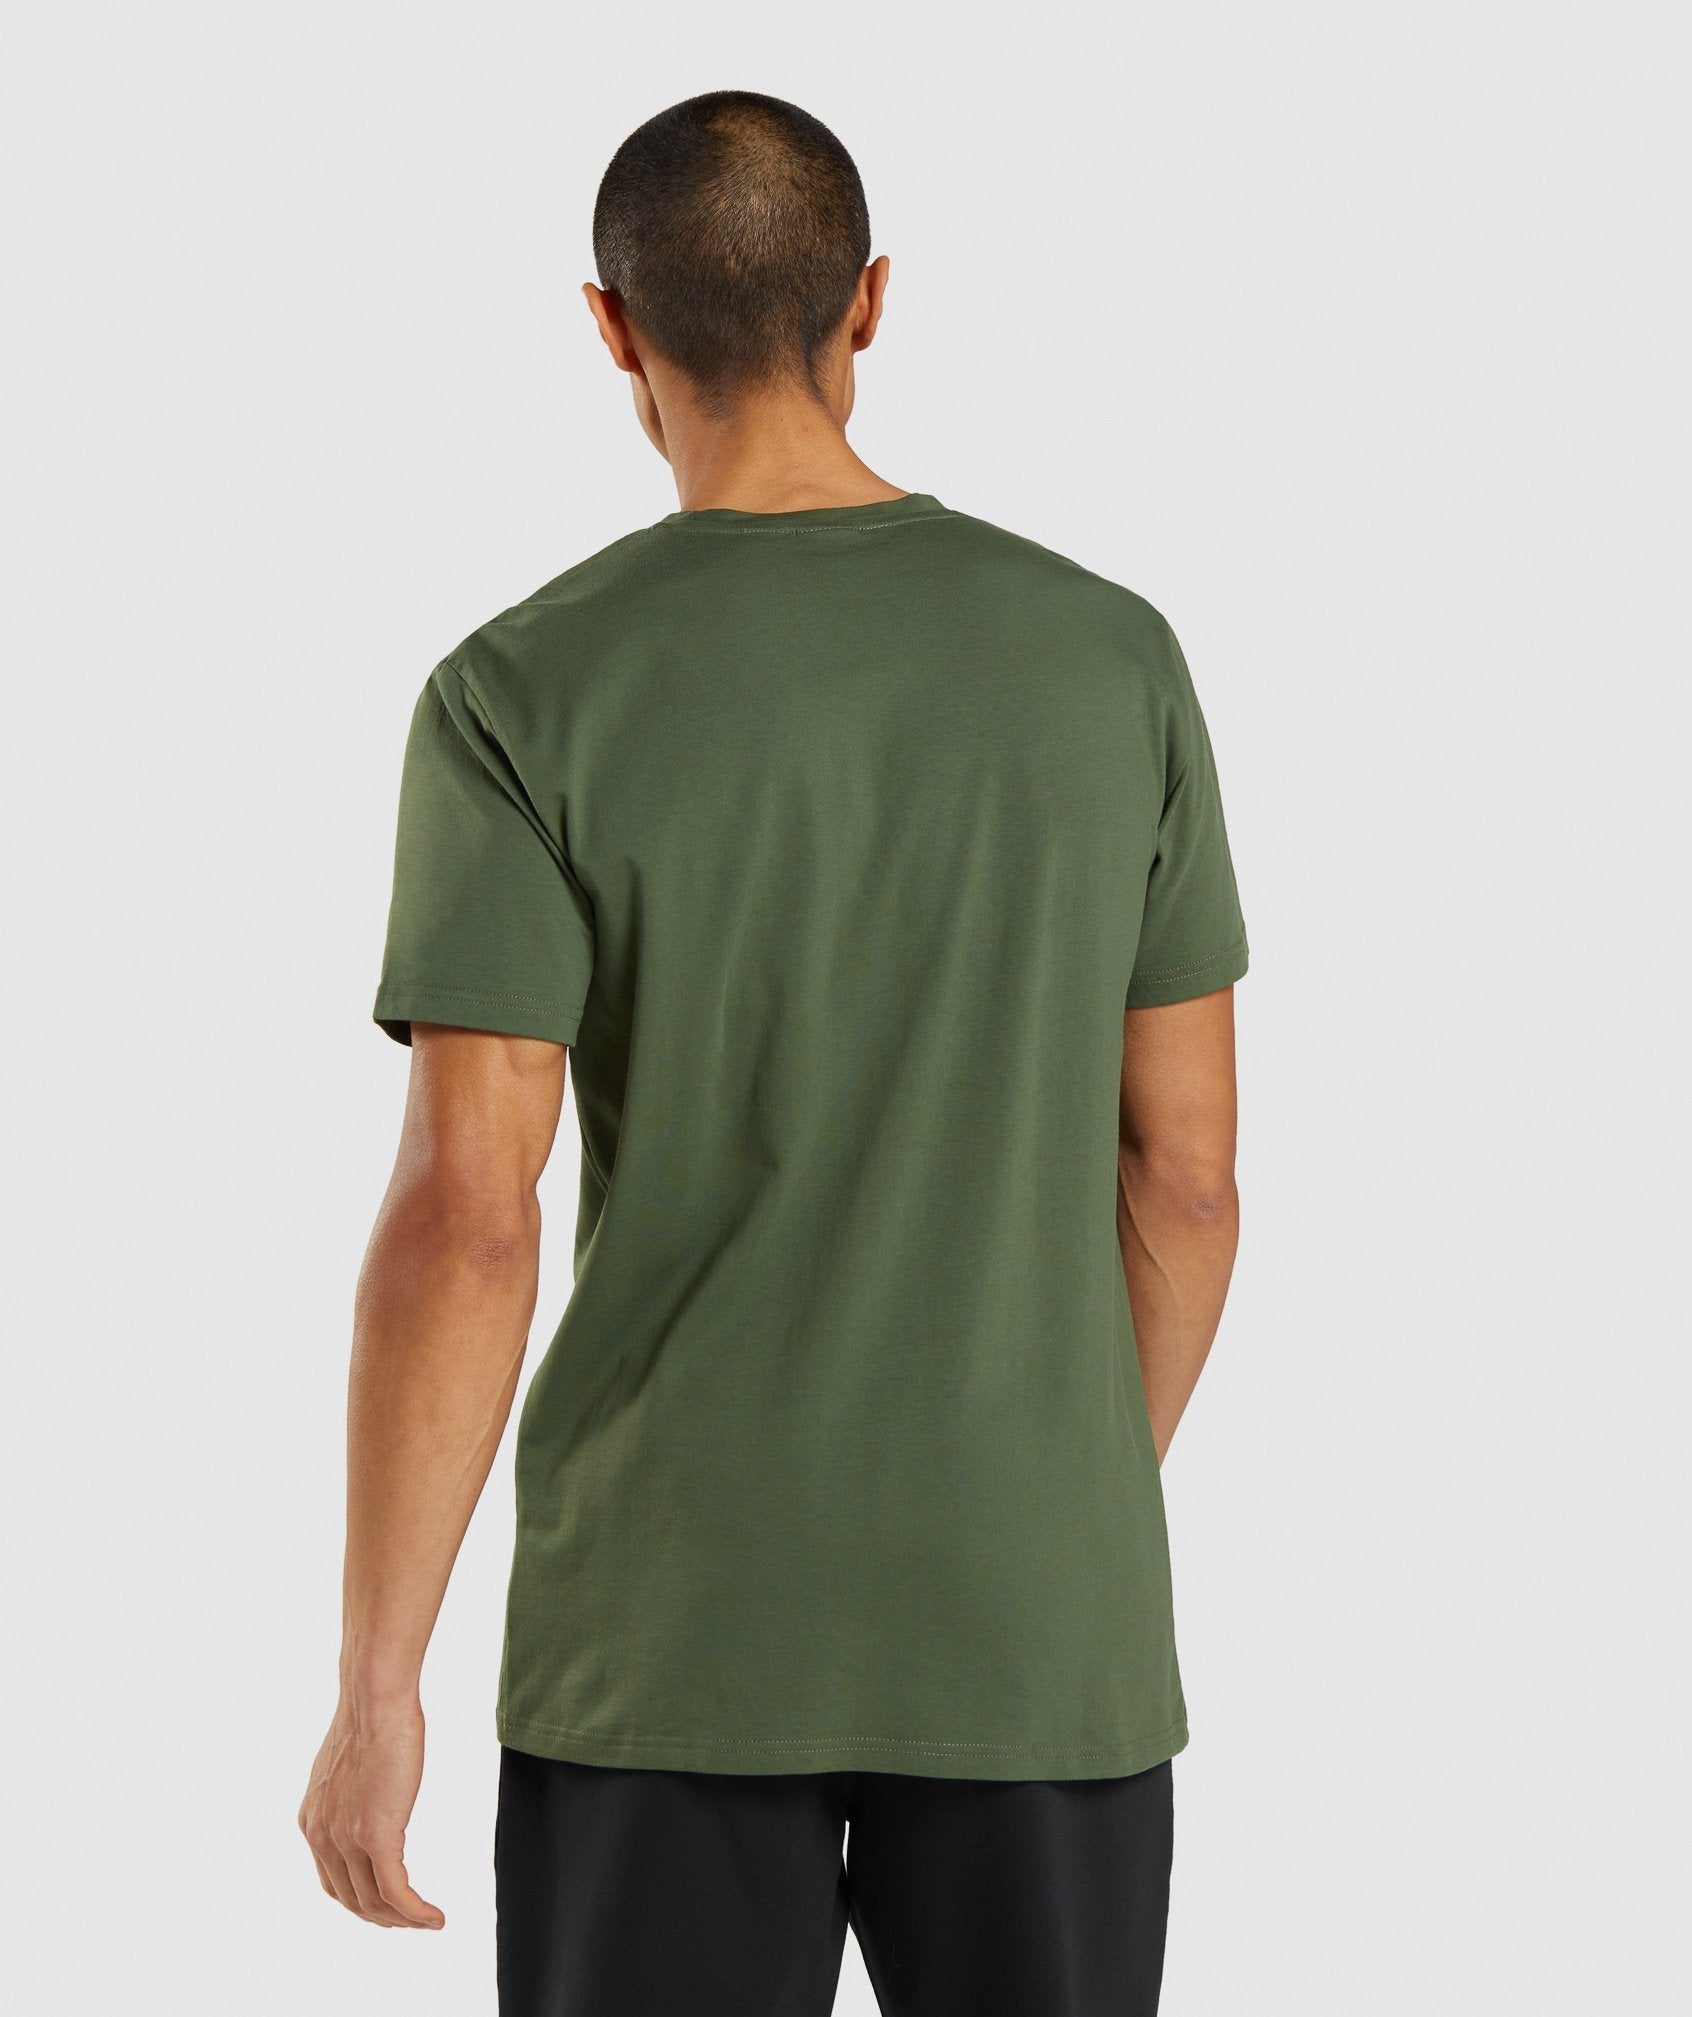 Sharkhead Infill T-Shirt in Green